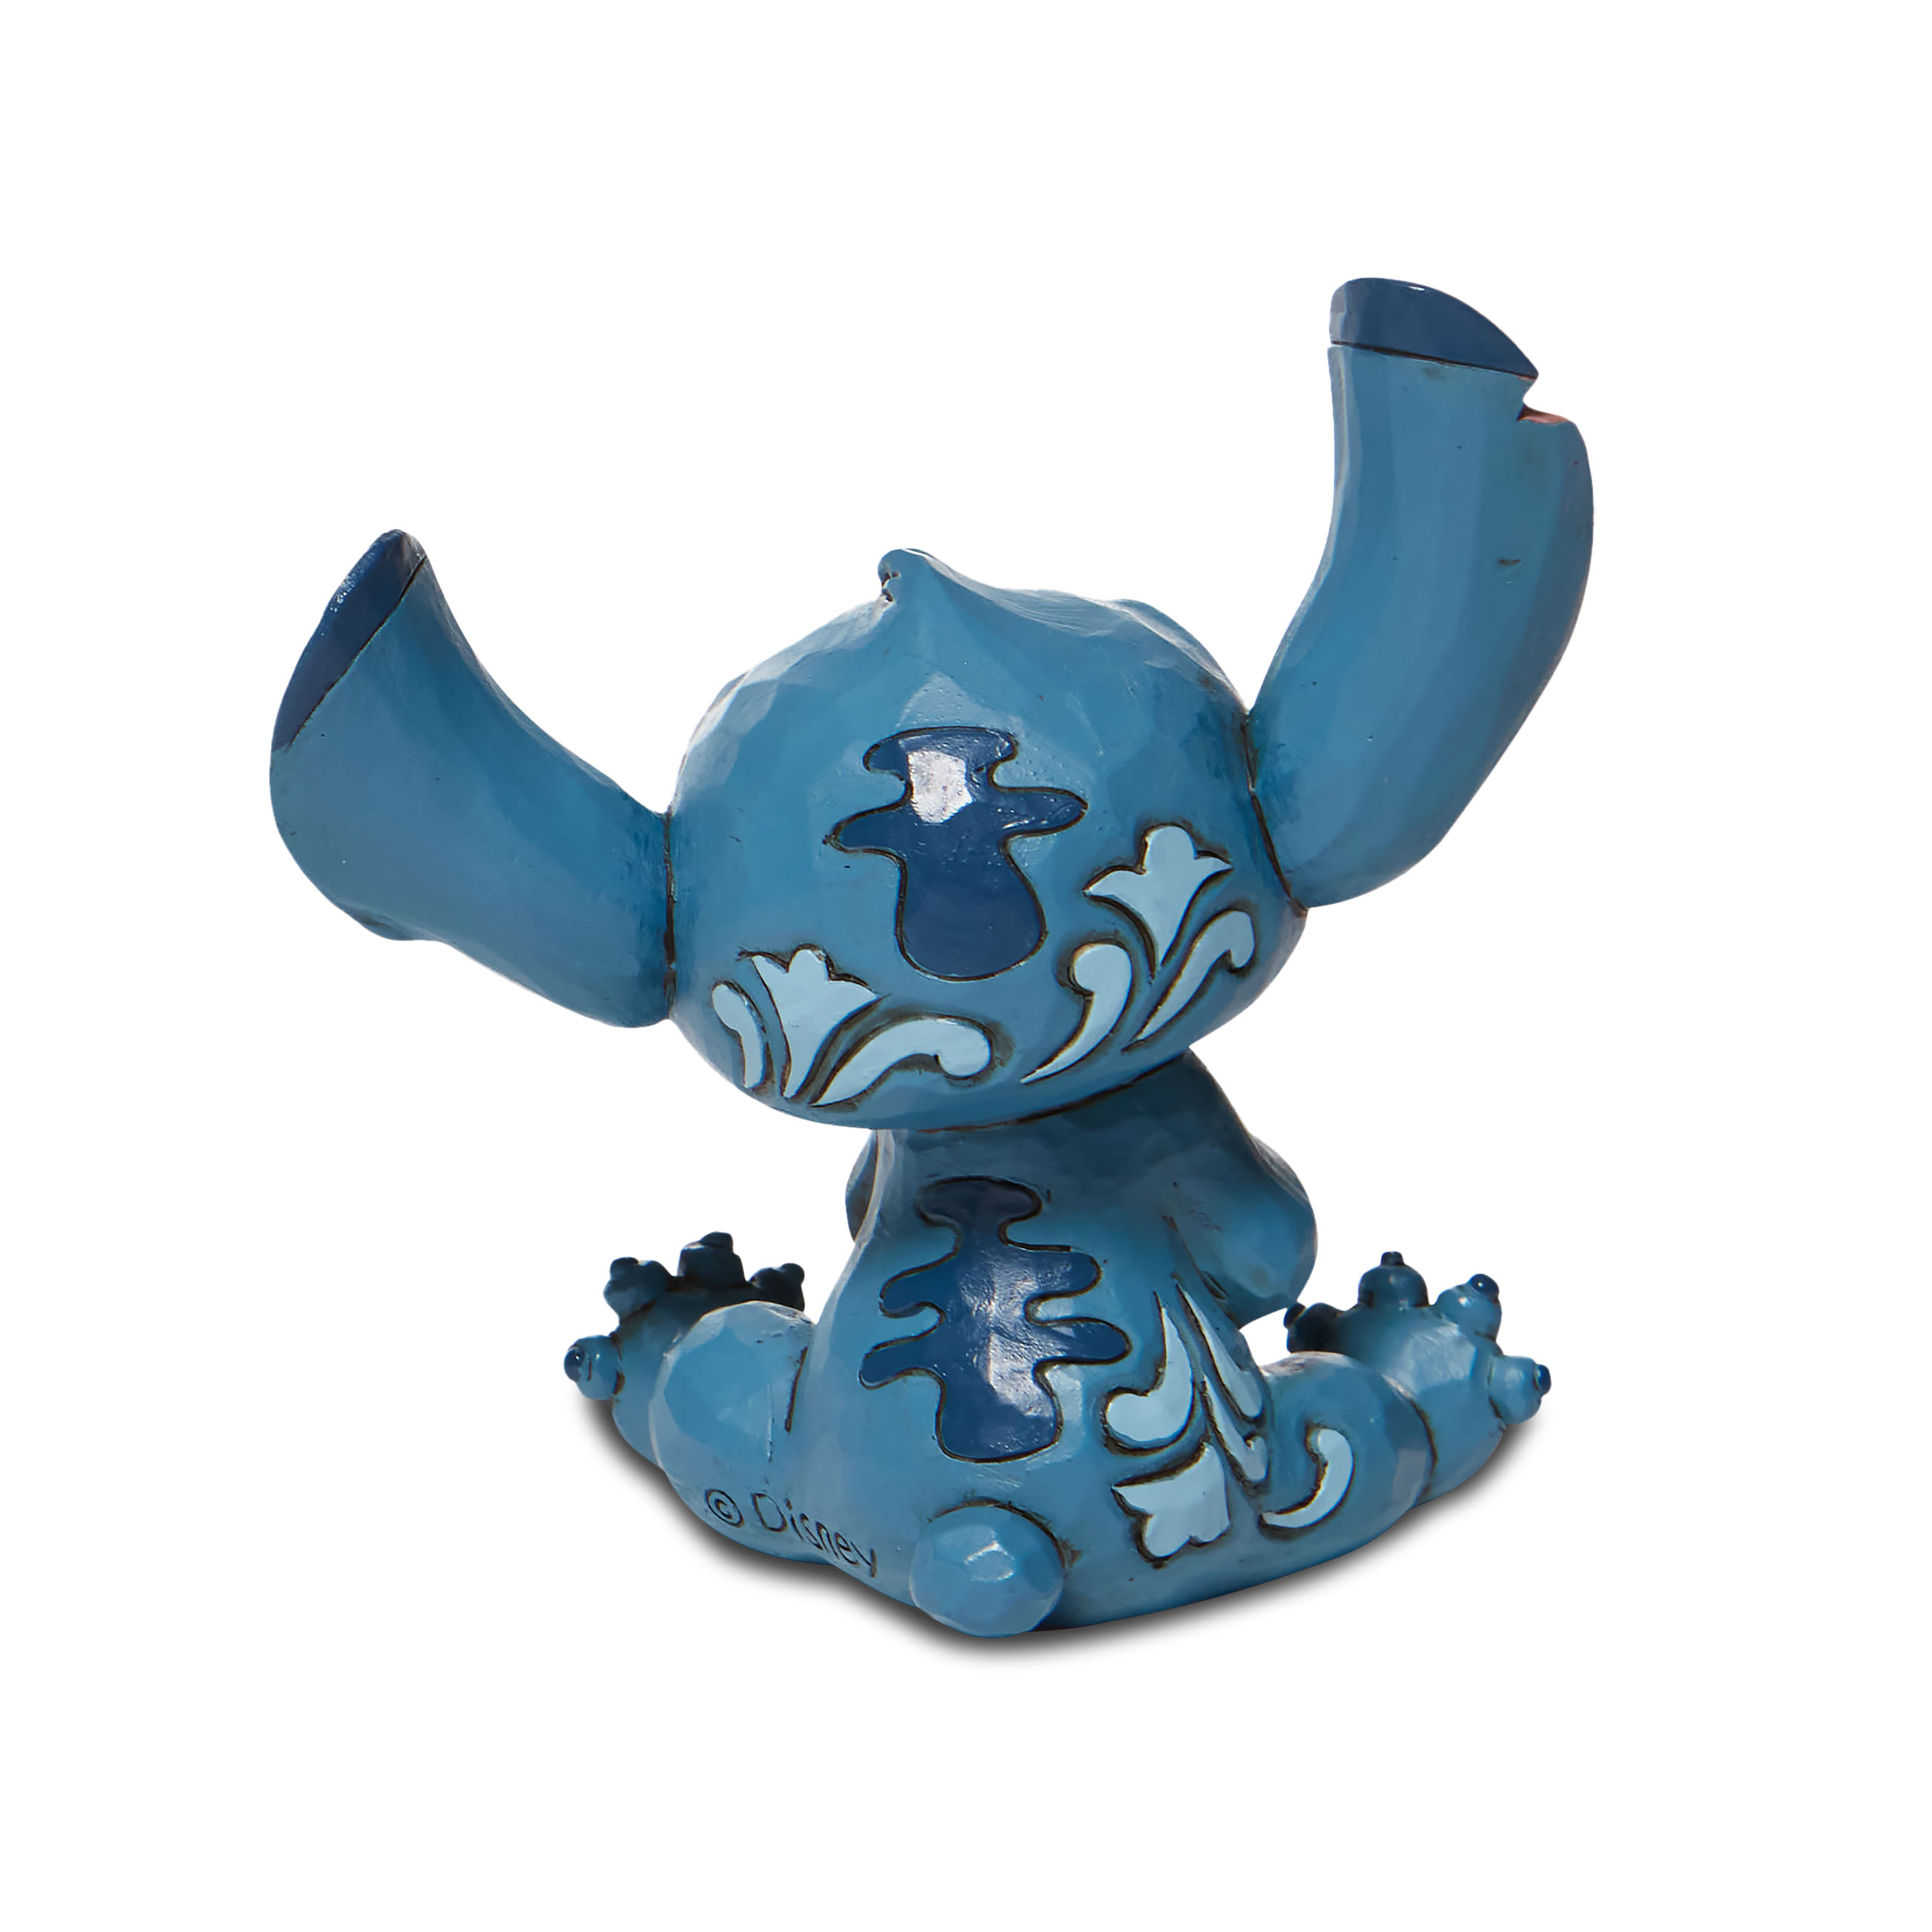 Figurine Stitch 9cm - Lilo & Stitch